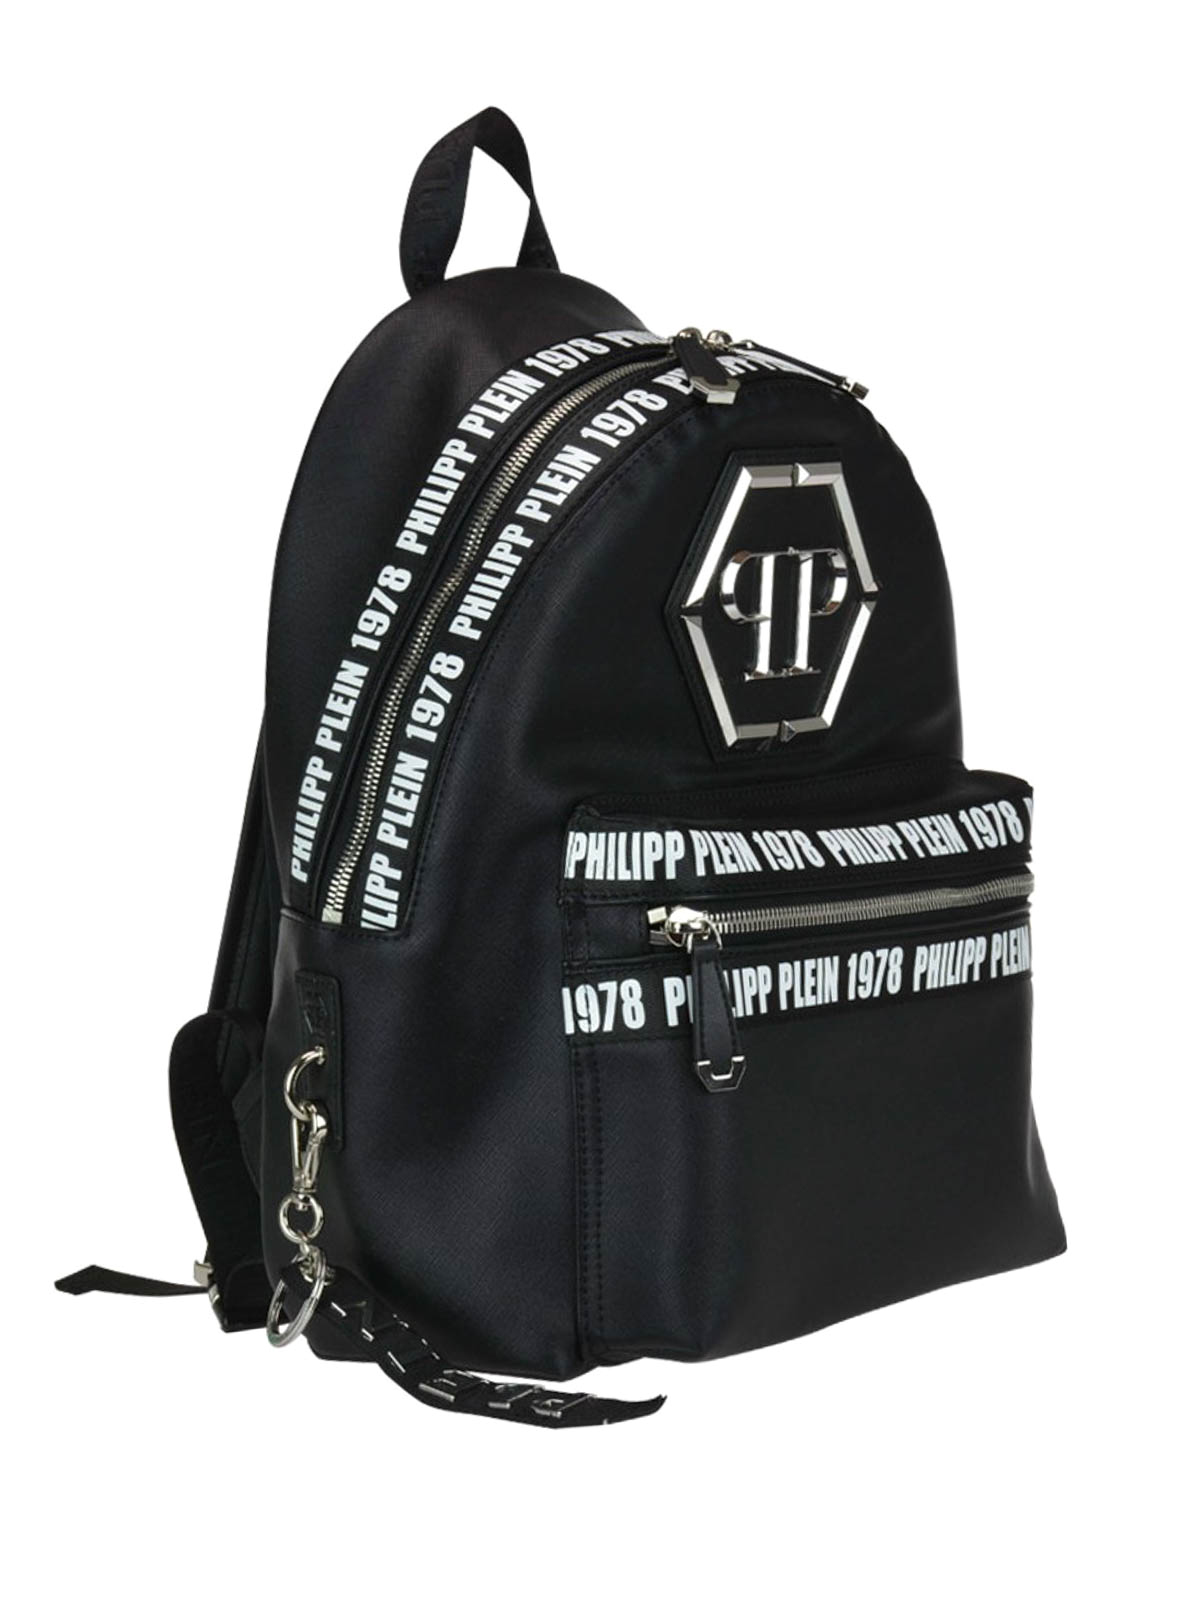 Backpacks Philipp Plein - Metal logo black nylon backpack ...